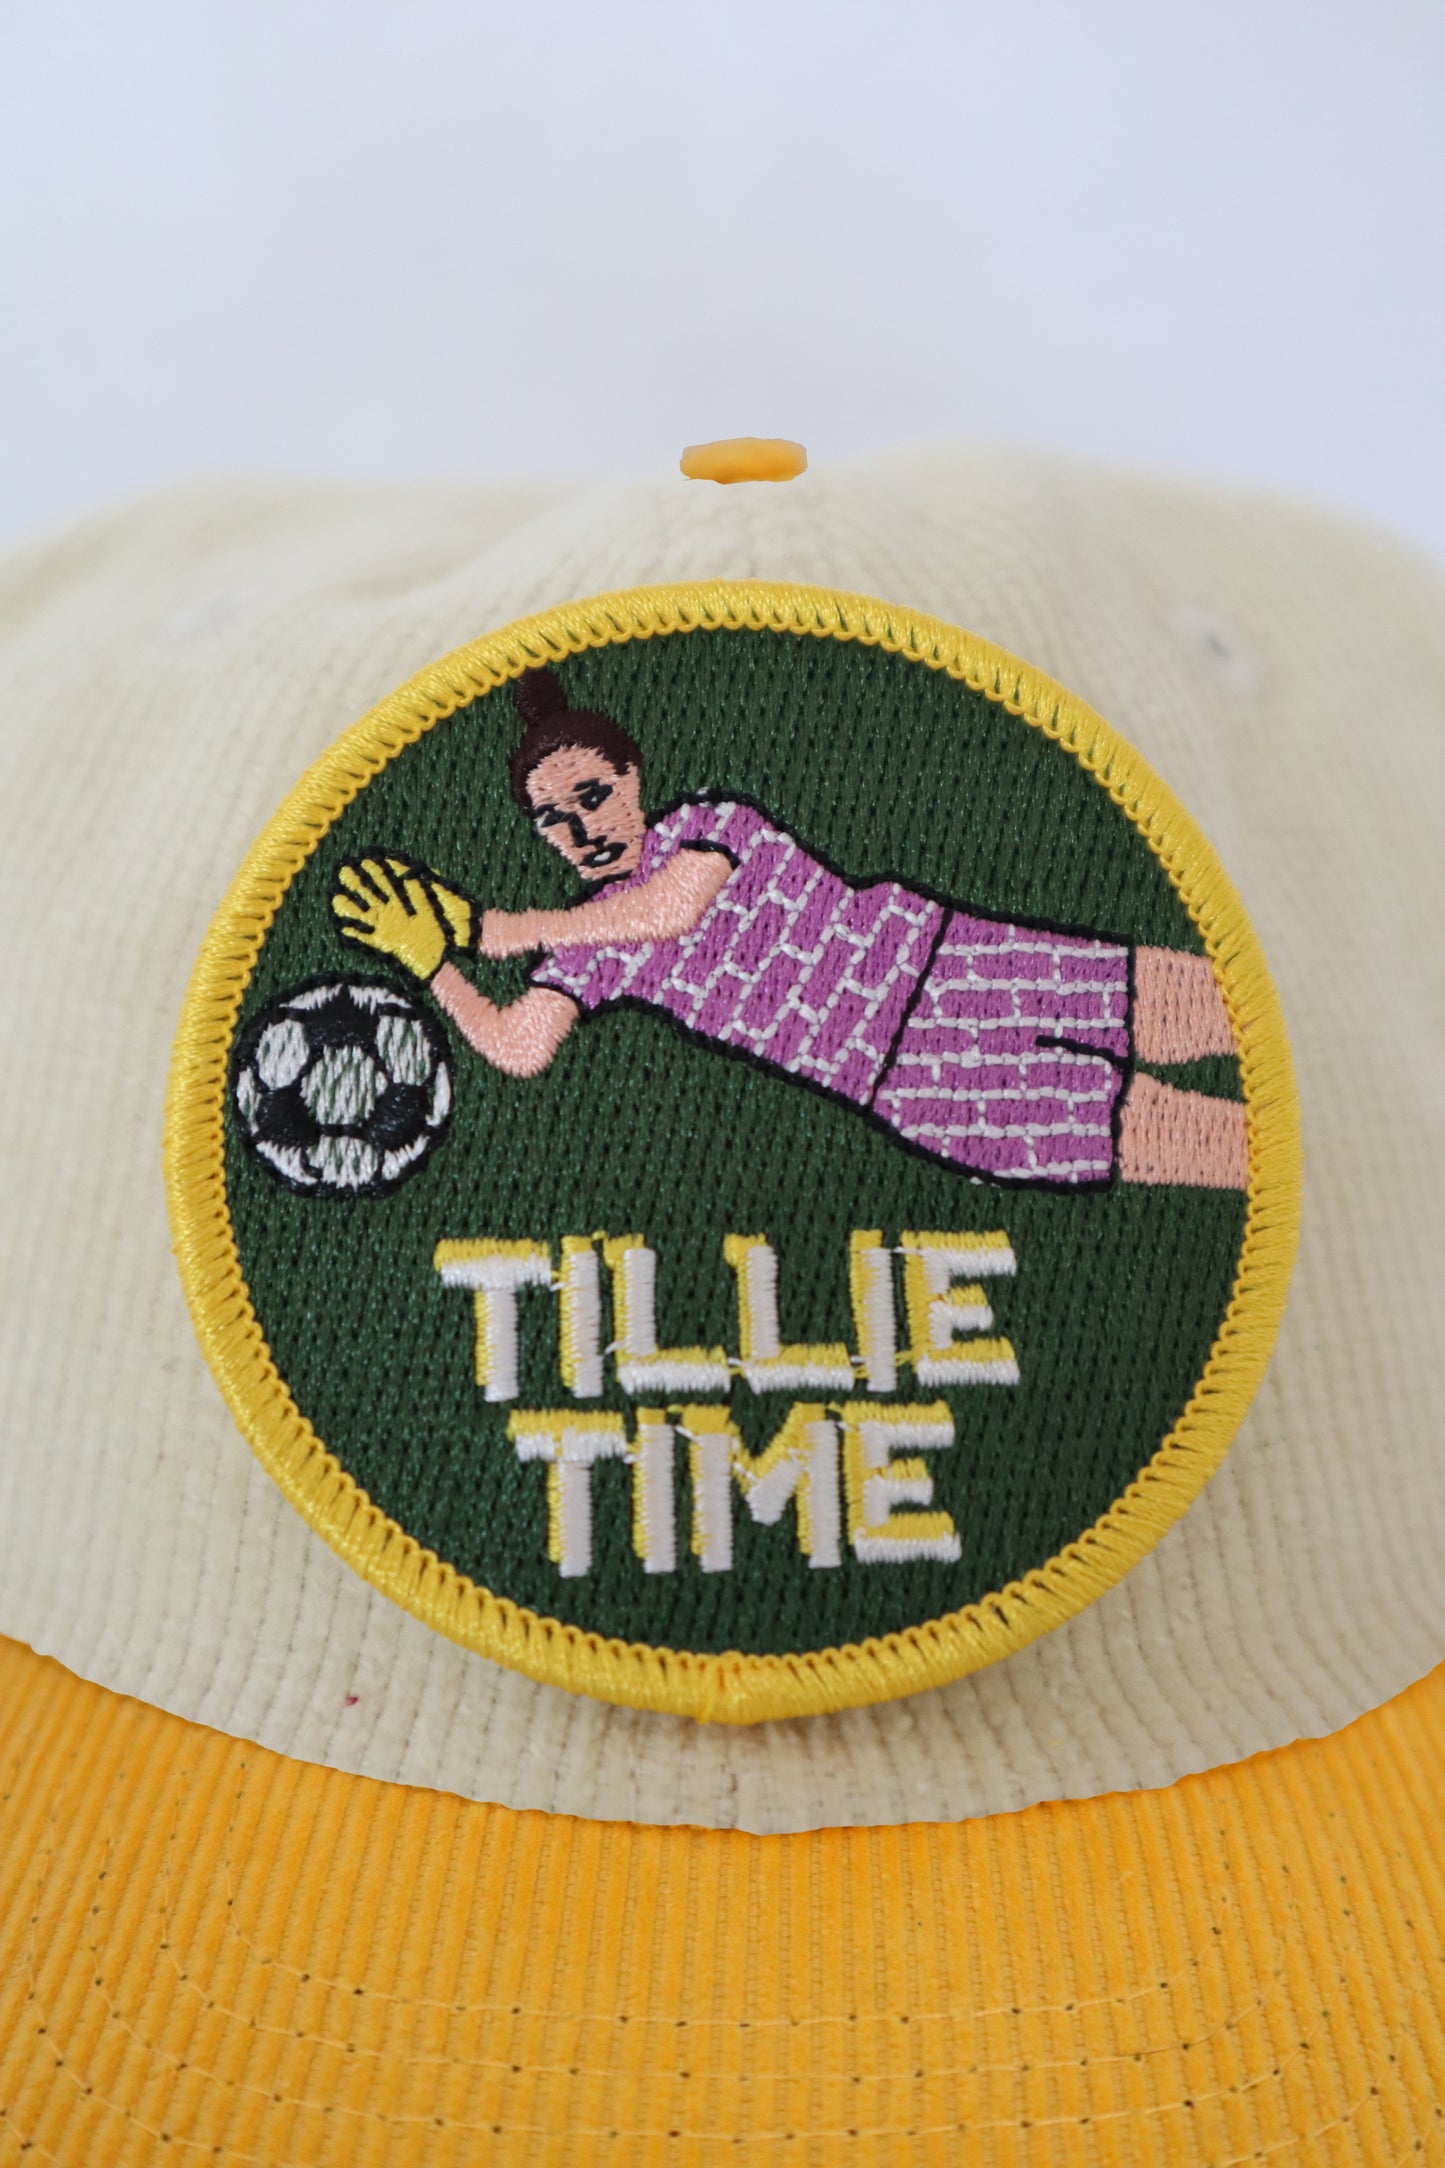 Tillie Time 2.0